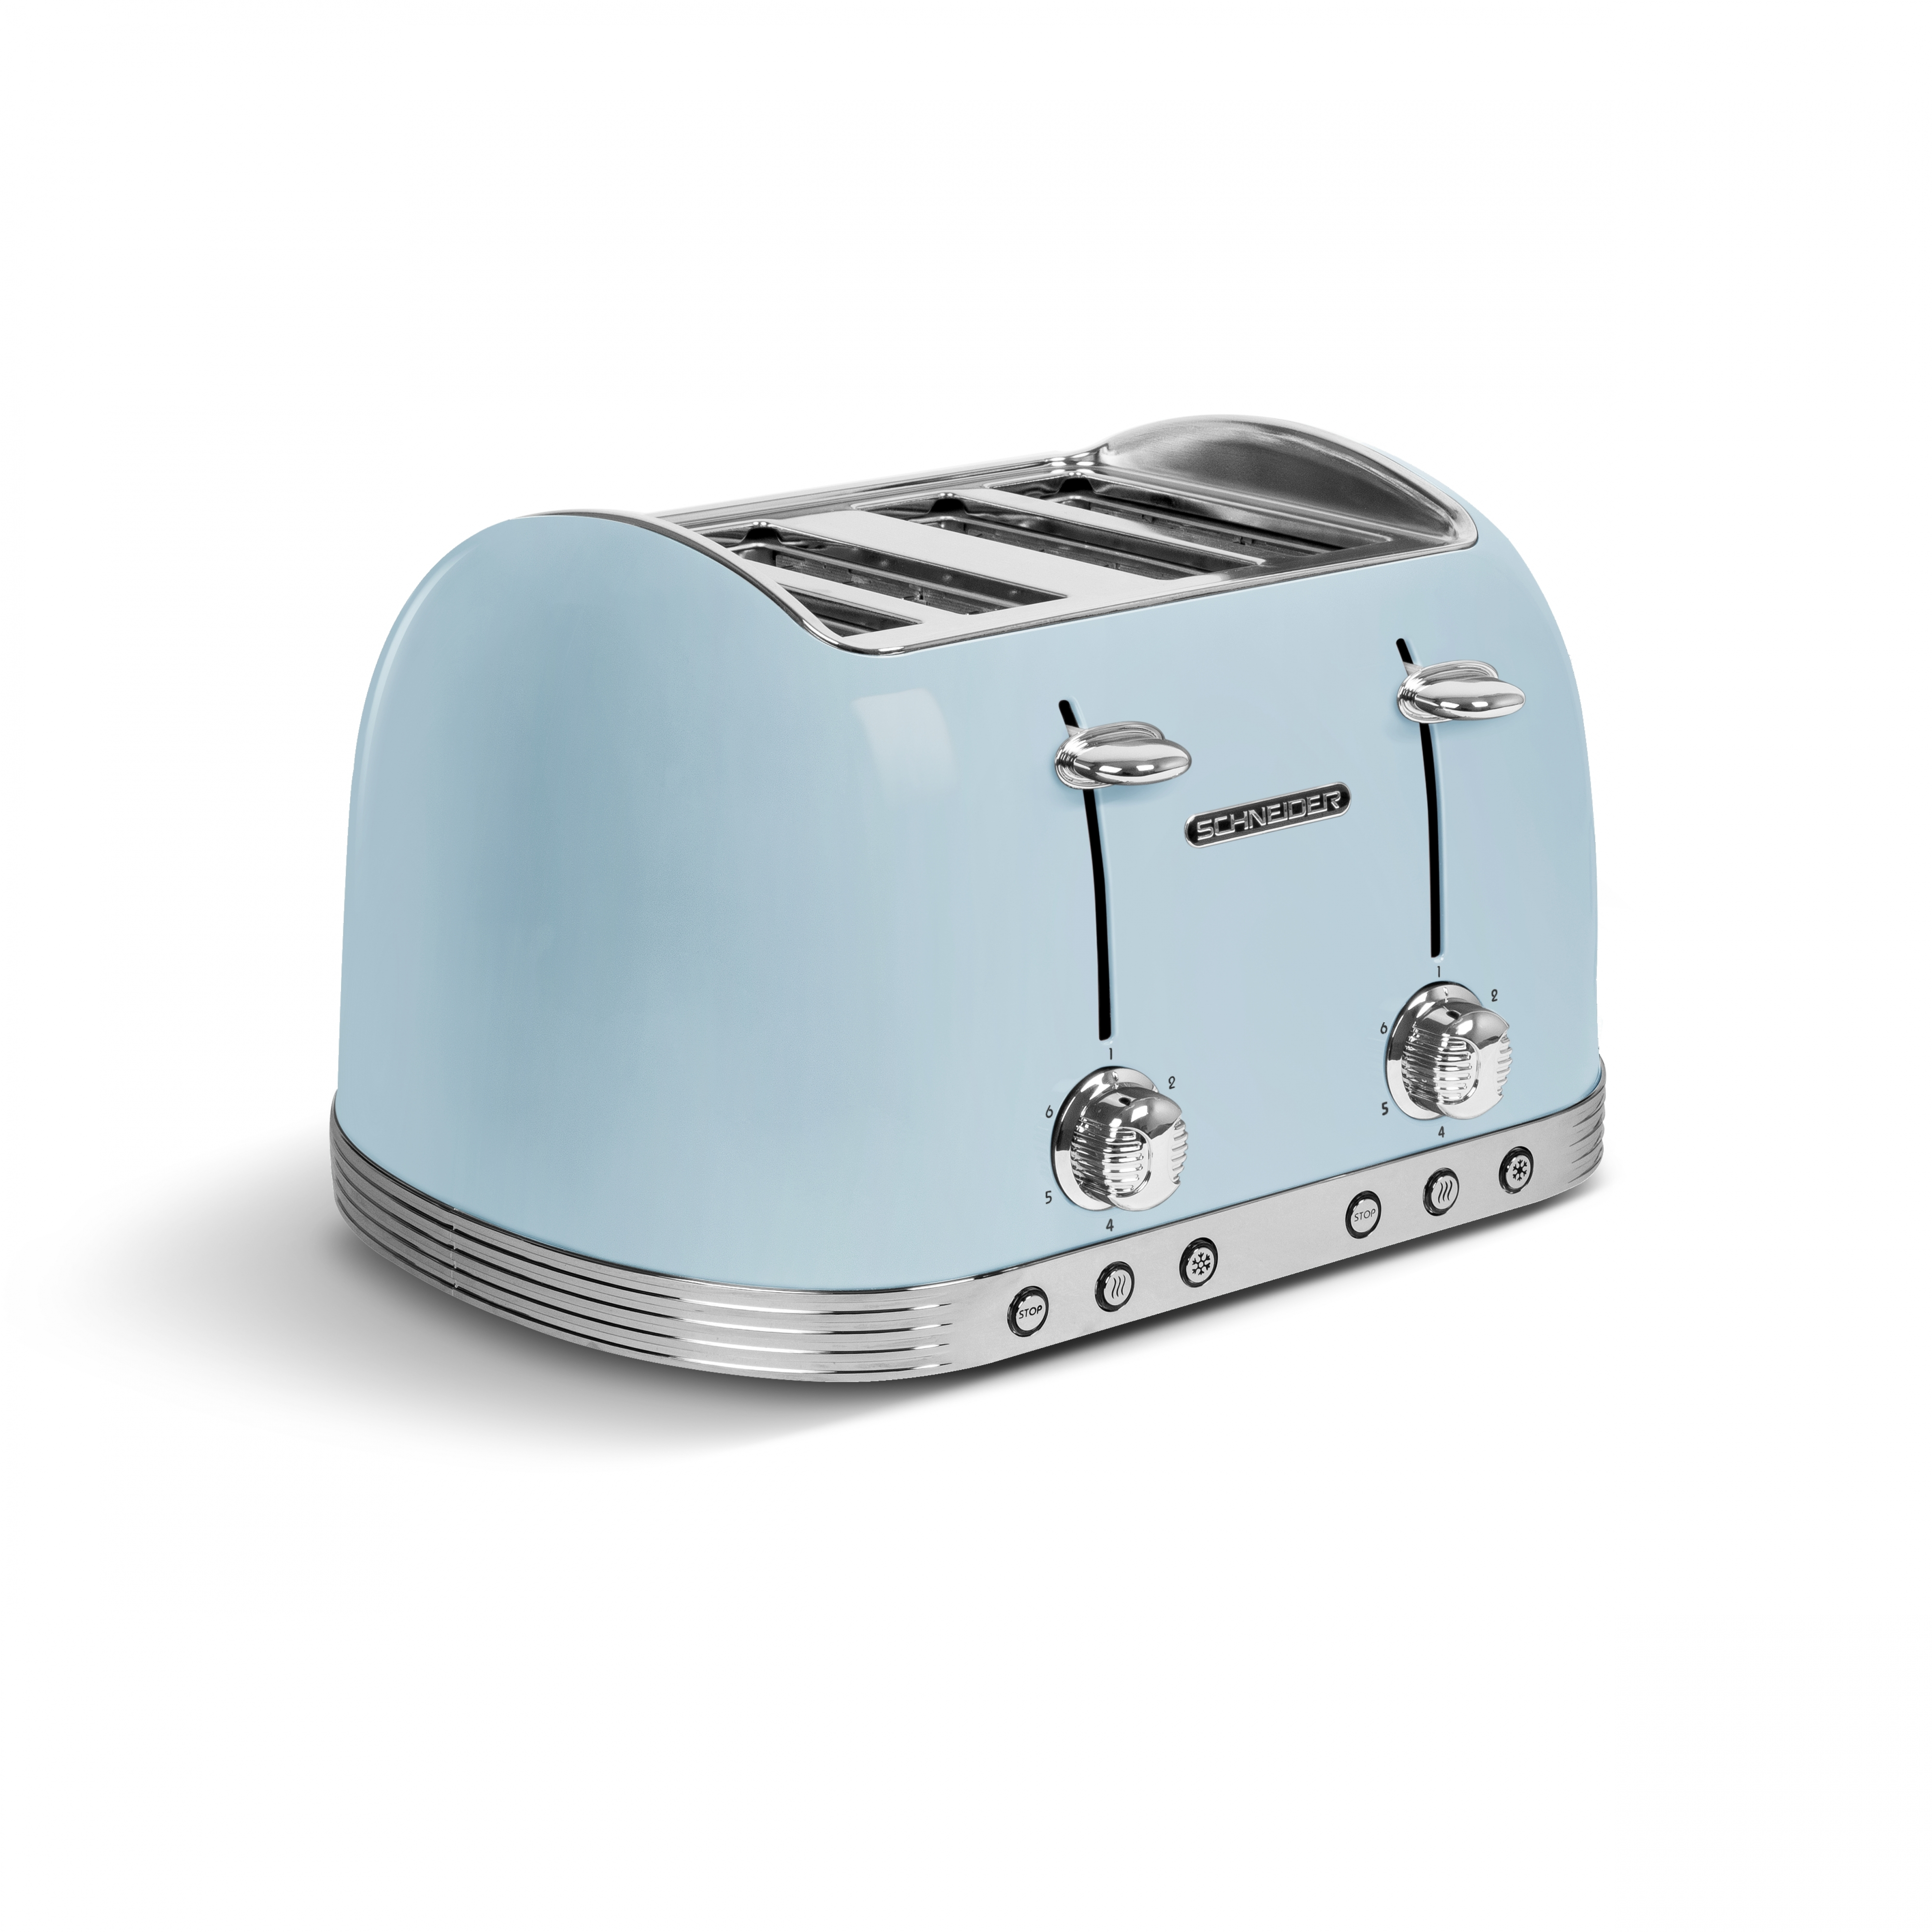 SCHNEIDER WS704 (1630 Wasserkocher Schlitze: Toaster Watt, Set blau 4)